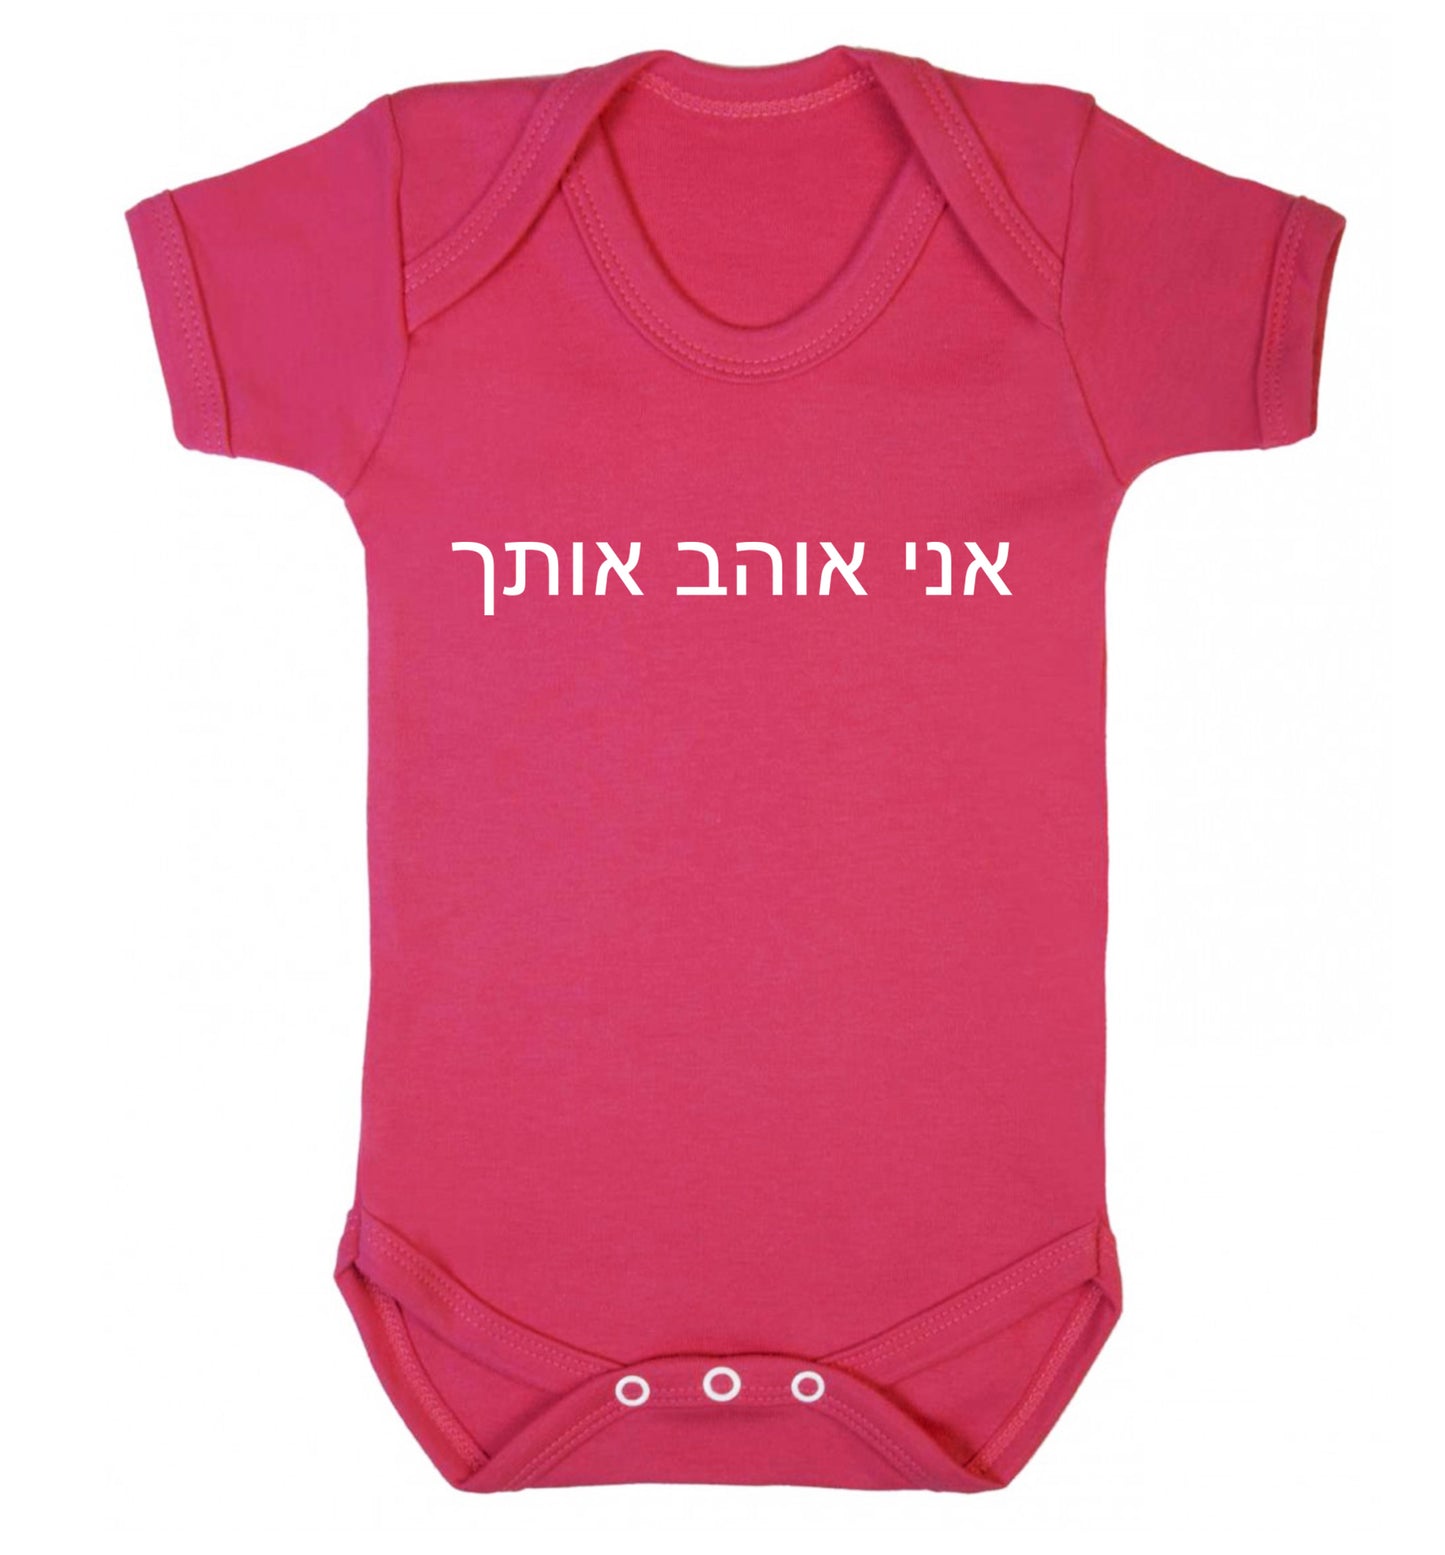 ___ ____ ____ - I love you Baby Vest dark pink 18-24 months